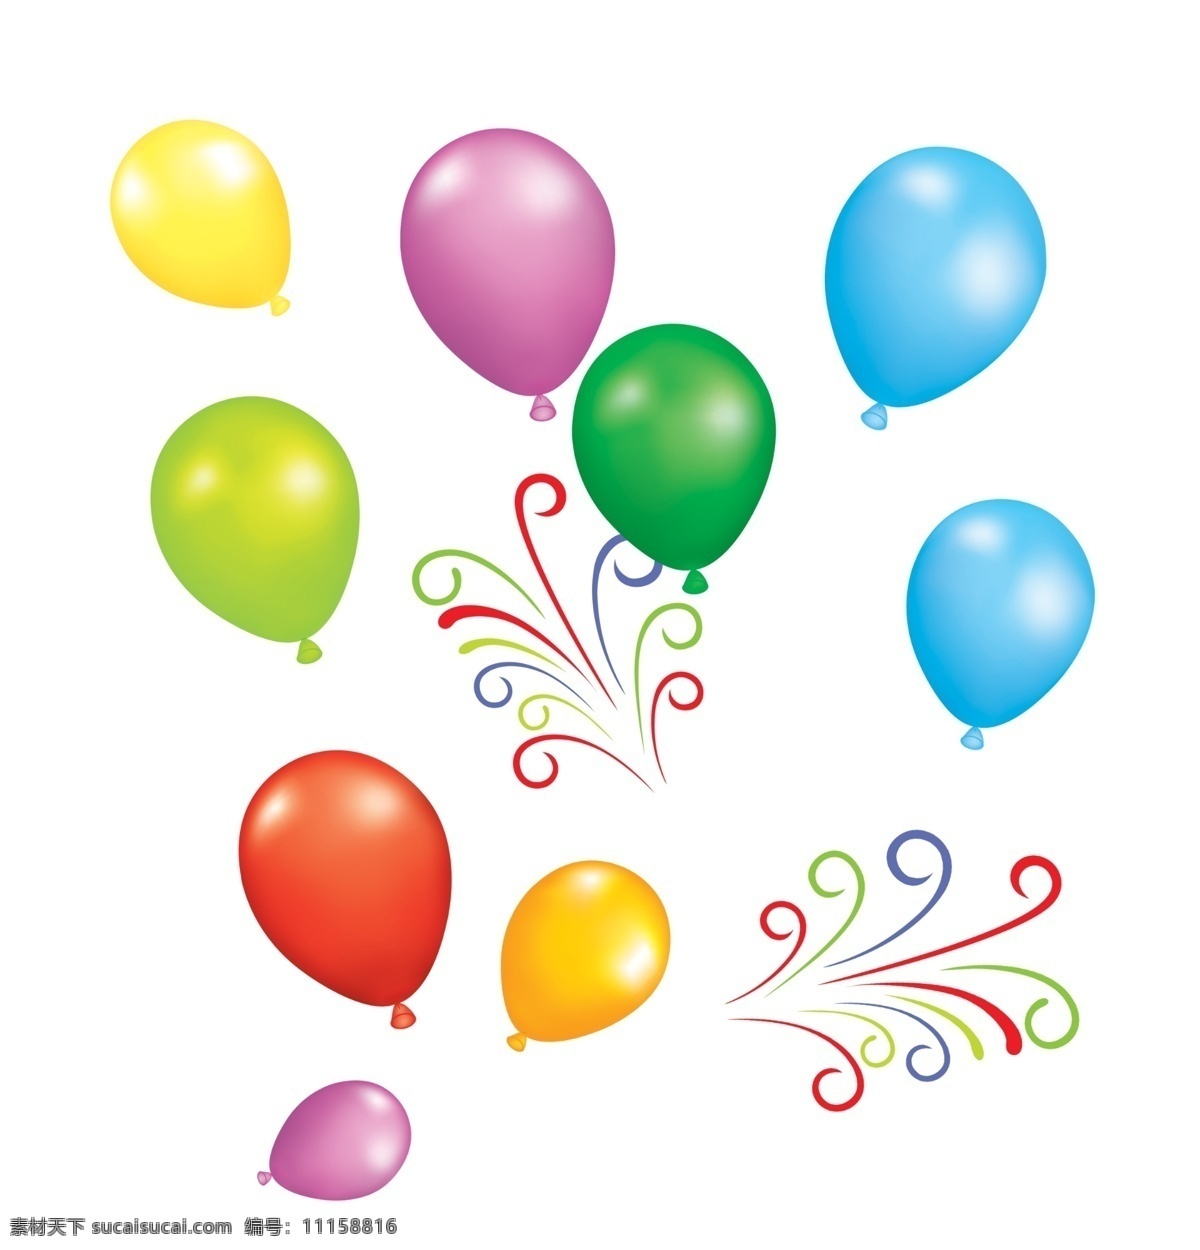 五颜六色气球 模版下载 五颜六色 气球素材下载 气球模板下载 气球 喜庆 丝带和气球 红气球 彩带 鲜艳 节日 六一儿童节 七色球 七彩气球 节日素材 源文件 文化艺术 节日庆祝